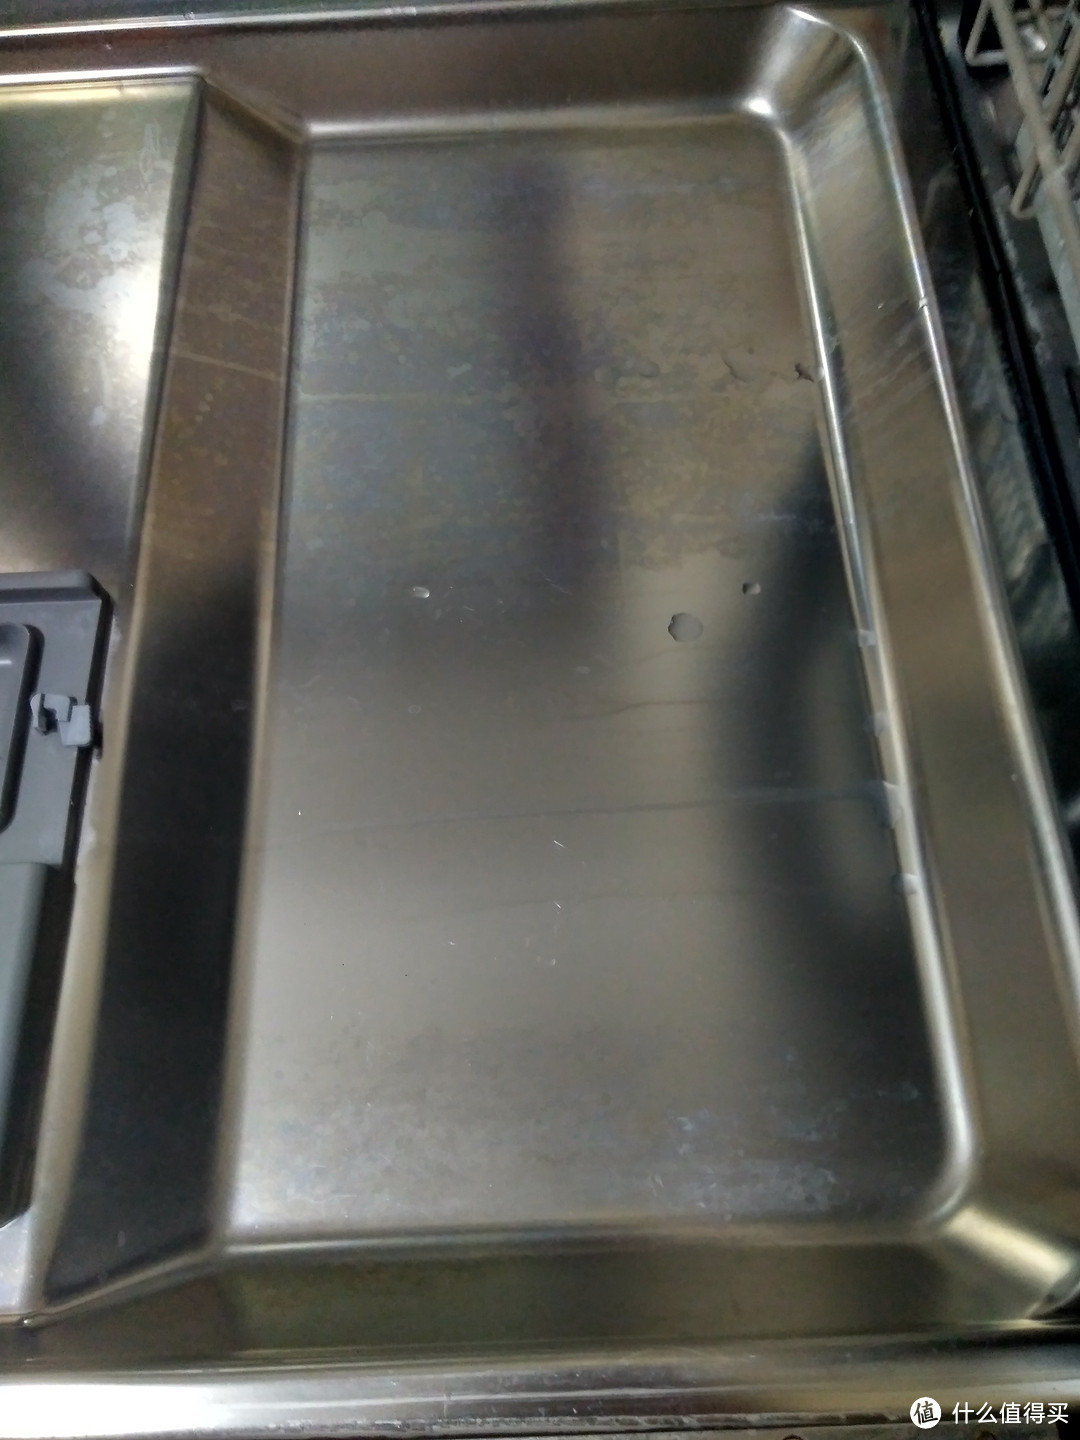 Finish 亮碟 洗碗机机体清洁剂 试用简单报告